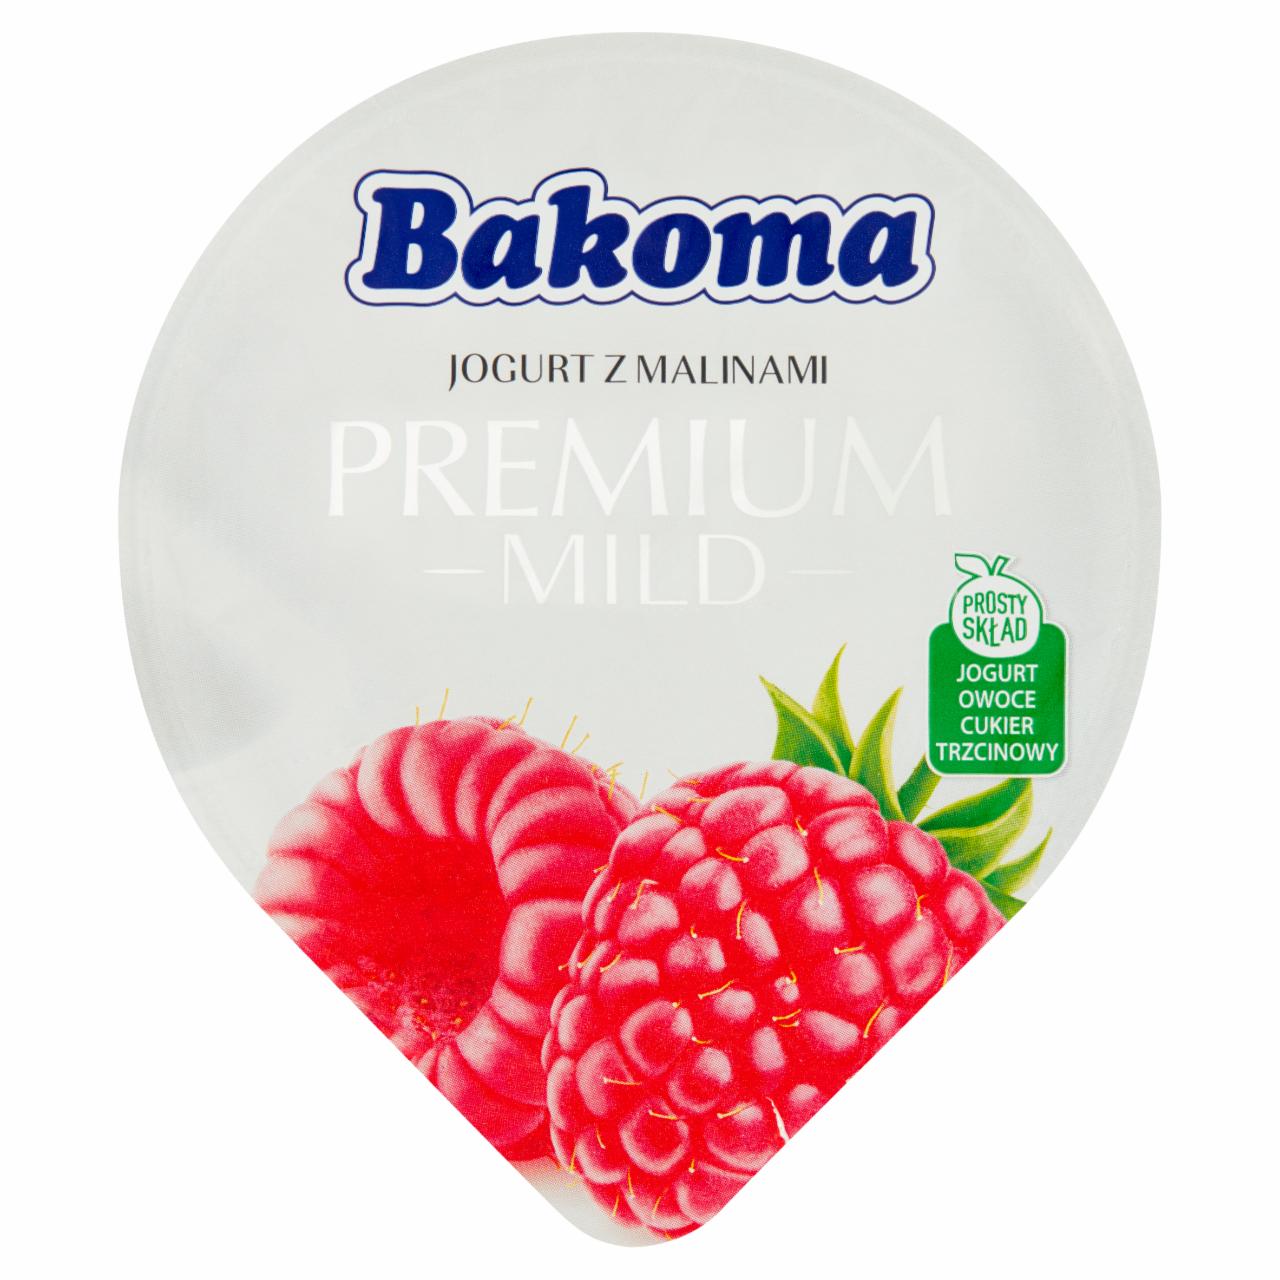 Zdjęcia - Bakoma Premium Mild Jogurt z malinami 140 g